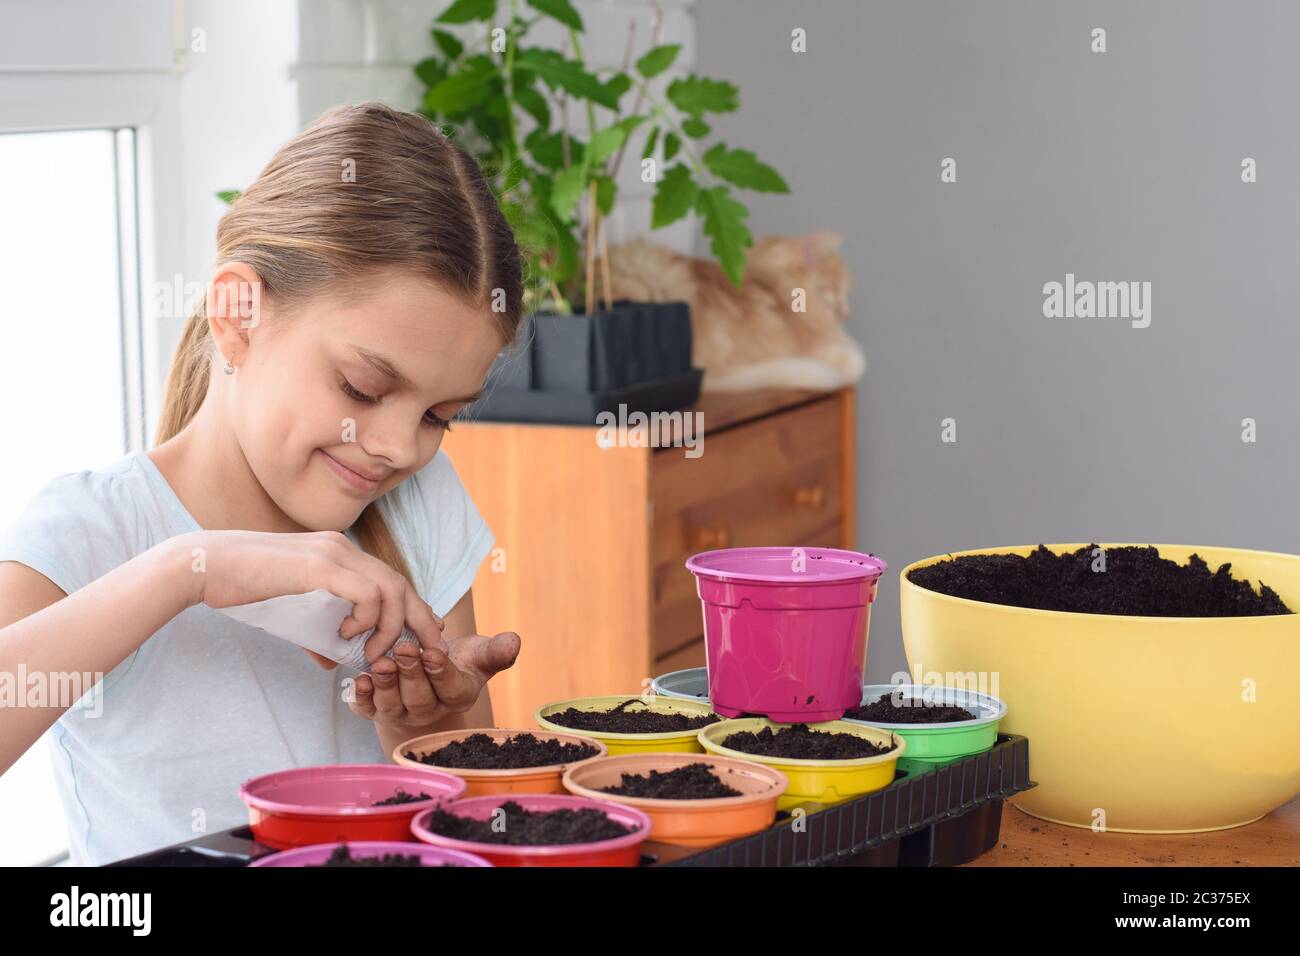 La ragazza versa i semi da un sacchetto in mano per piantare ulteriormente Foto Stock